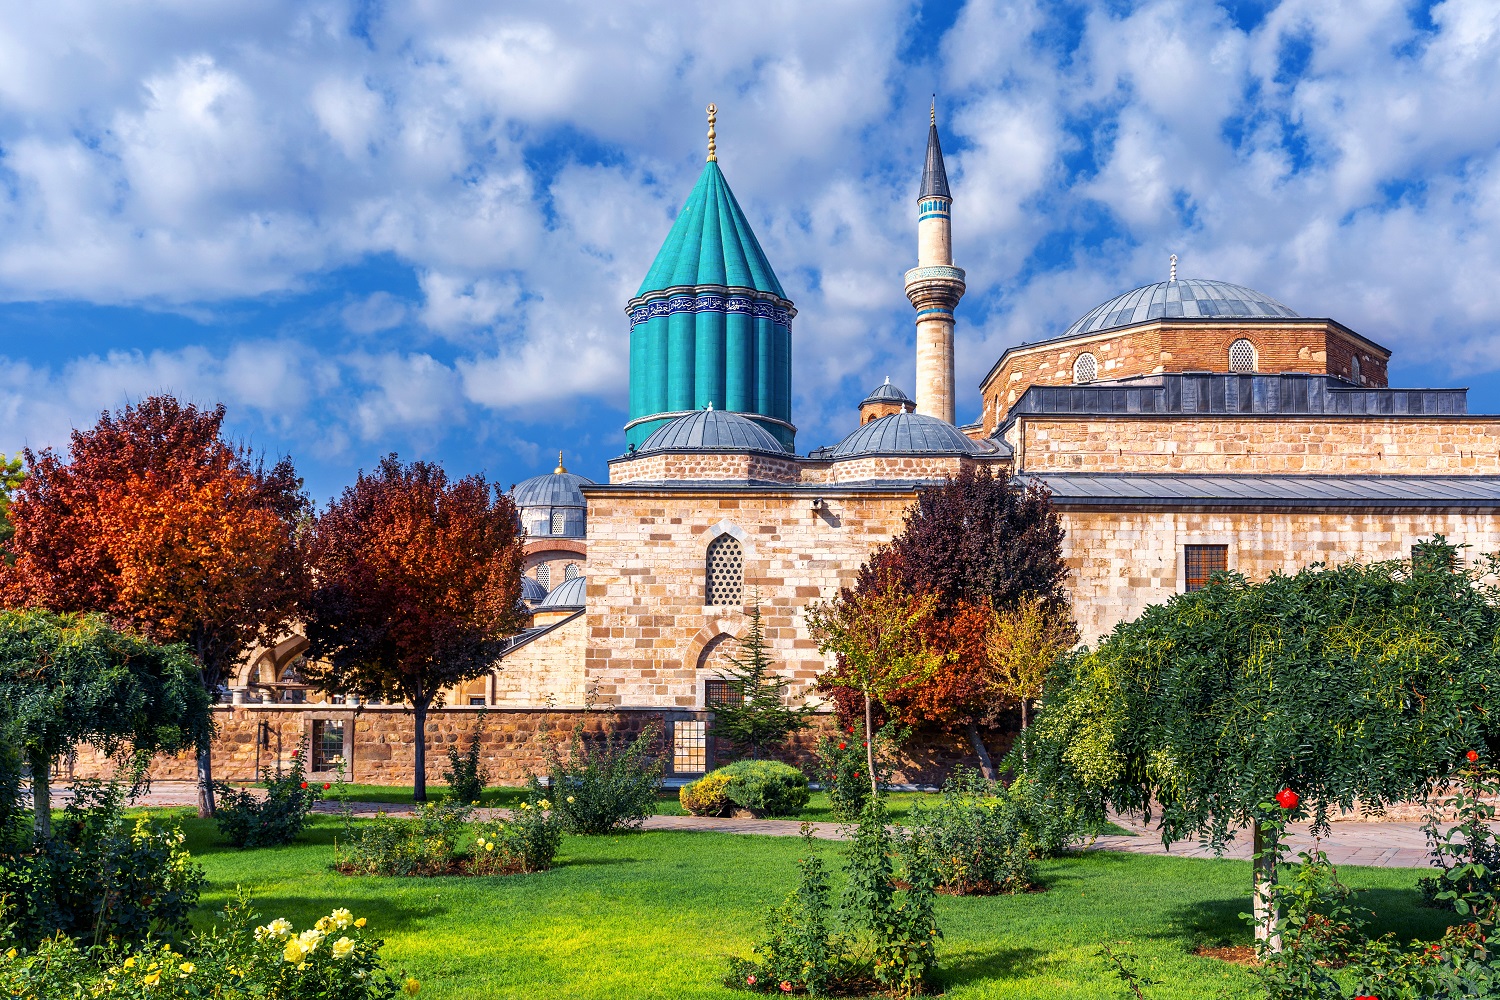 Mevlana mosque in Konya, Turkey.